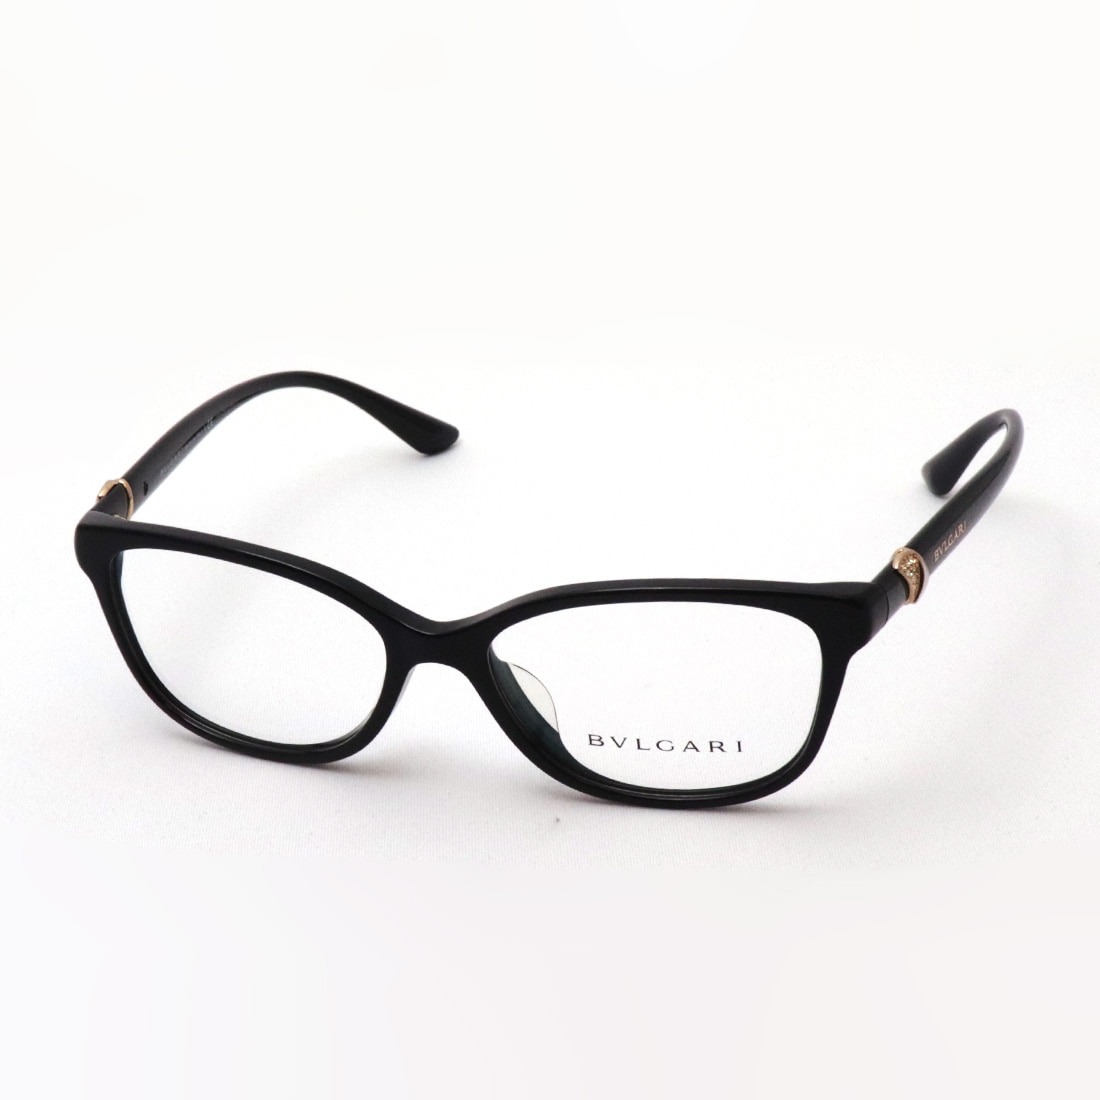 BB1334401Fbgeg28 新品 ブルガリ メガネフレーム ブラック マットシルバー 黒 眼鏡